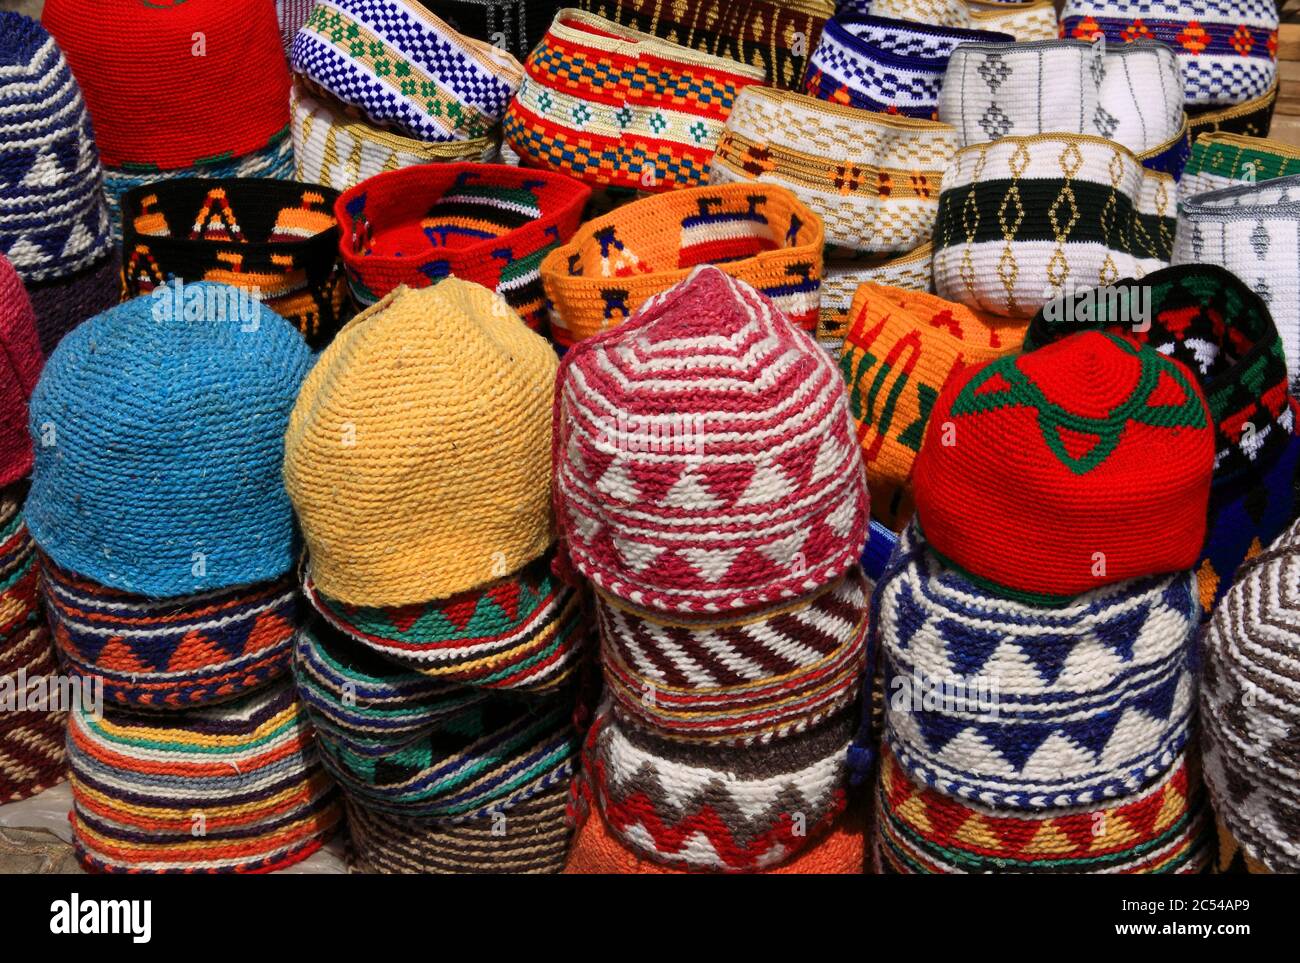 Marocco. Mostra colorata di cappelli tipici nel souk storico della medina di Marrakech. Sito patrimonio dell'umanità dell'UNESCO. Foto Stock